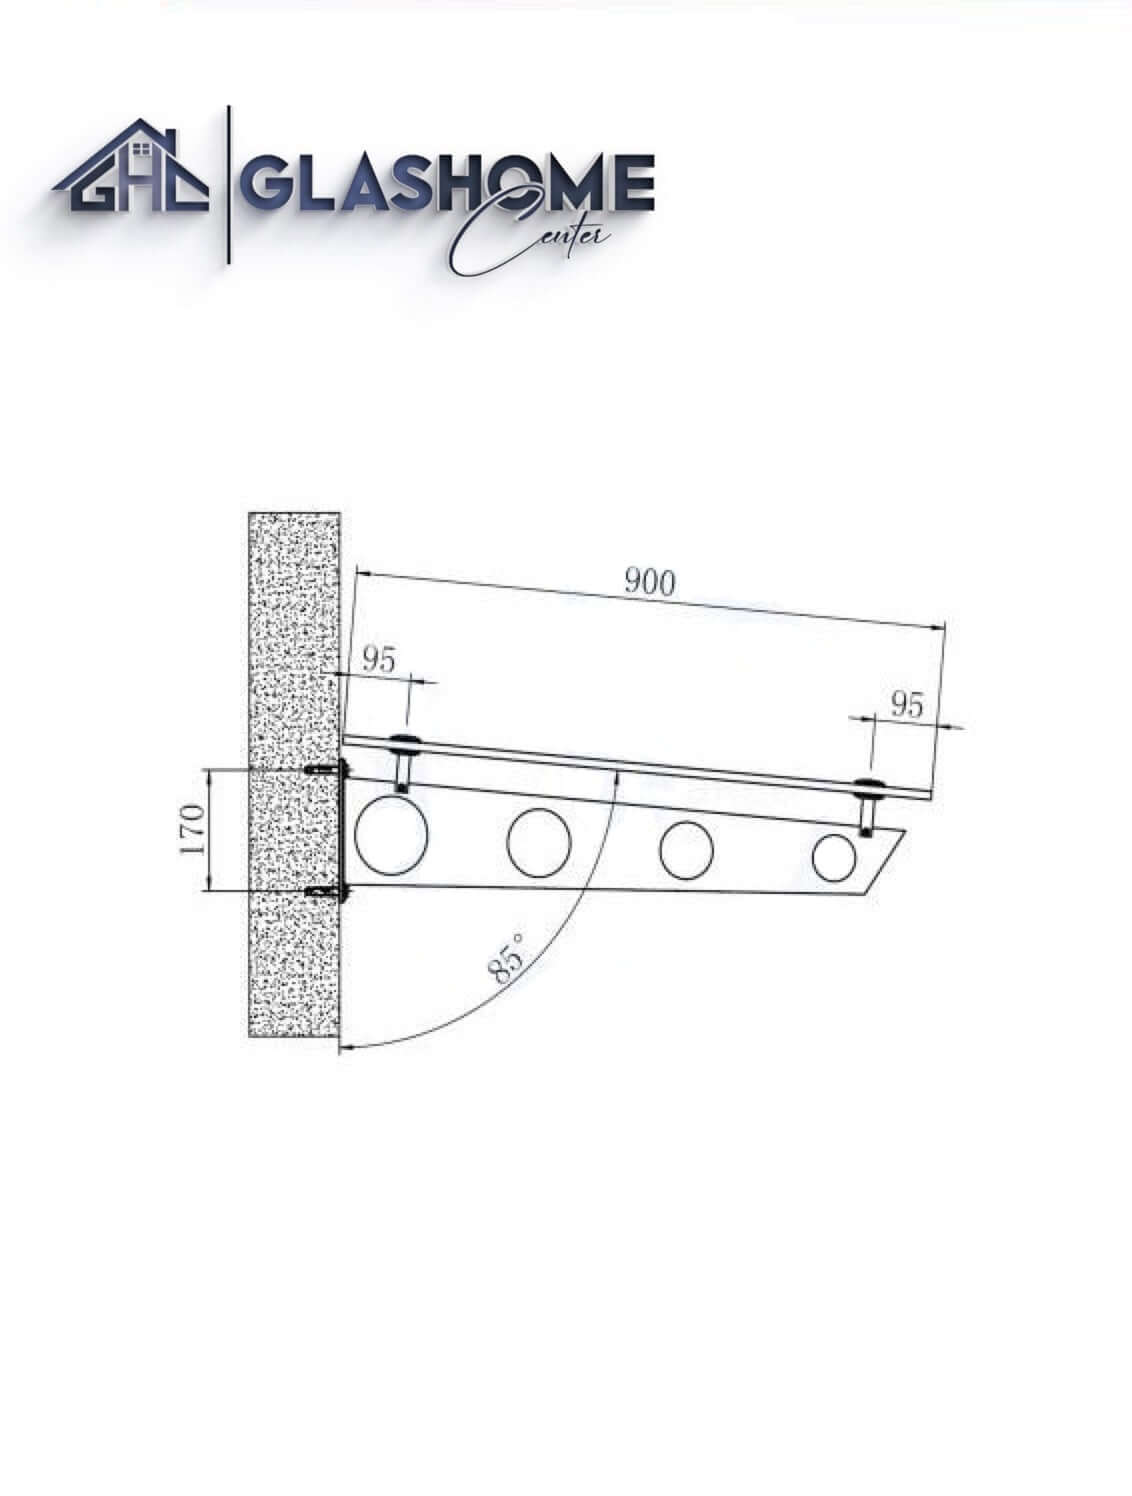 GlasHomeCenter - Glasvordach - Grauglas - 200x90cm - 13,1mm VSG - incl. 2 varianti Edelstahlhalterungen nere "Stoccolma"